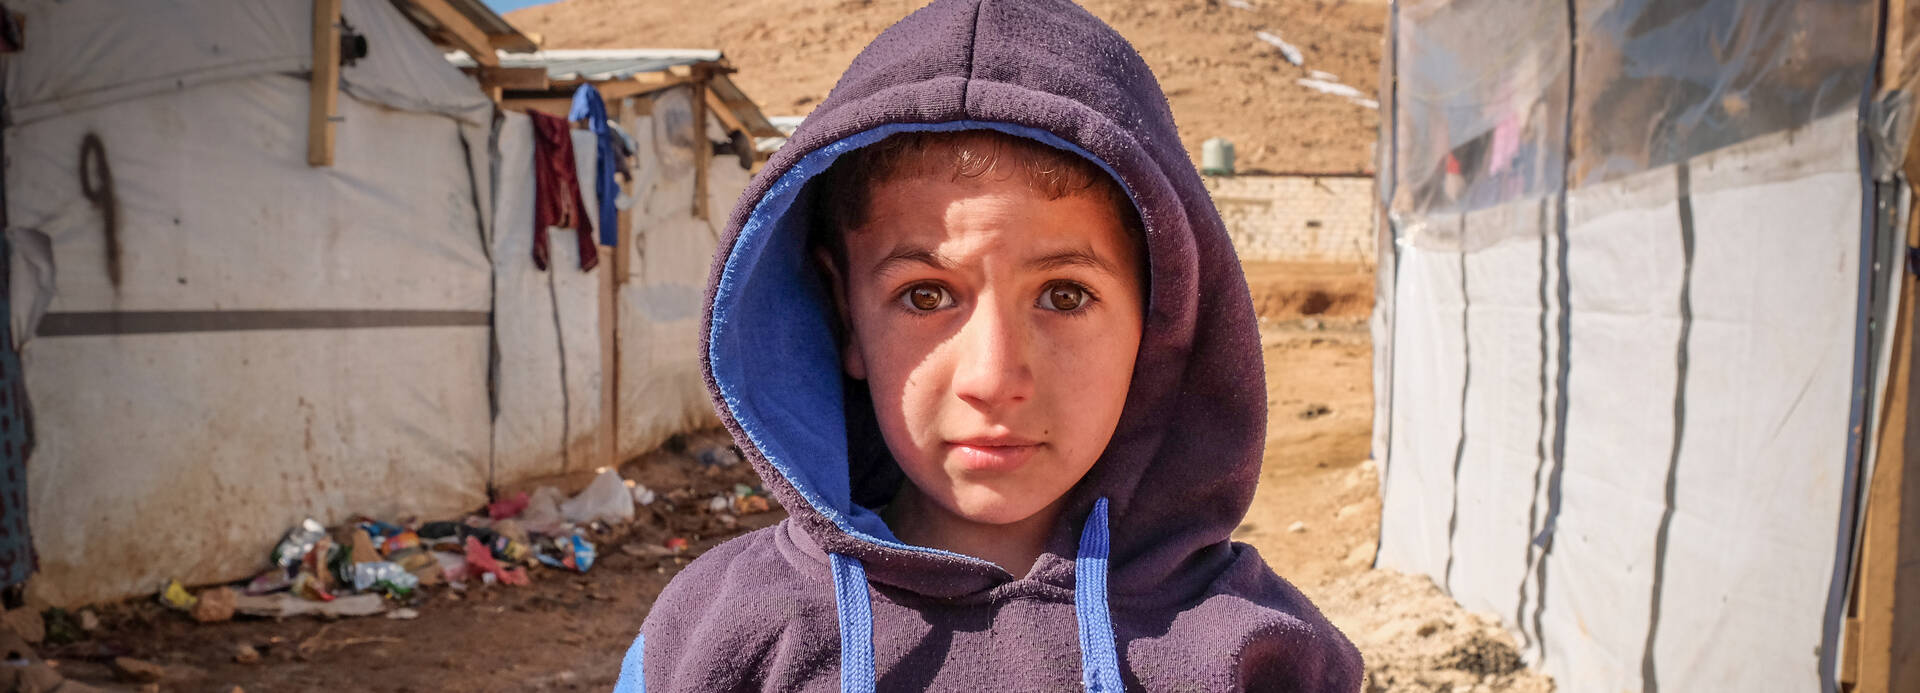 Mahmoud ist 8 Jahre alt und musste aus seiner Heimat Syrien fliehen.